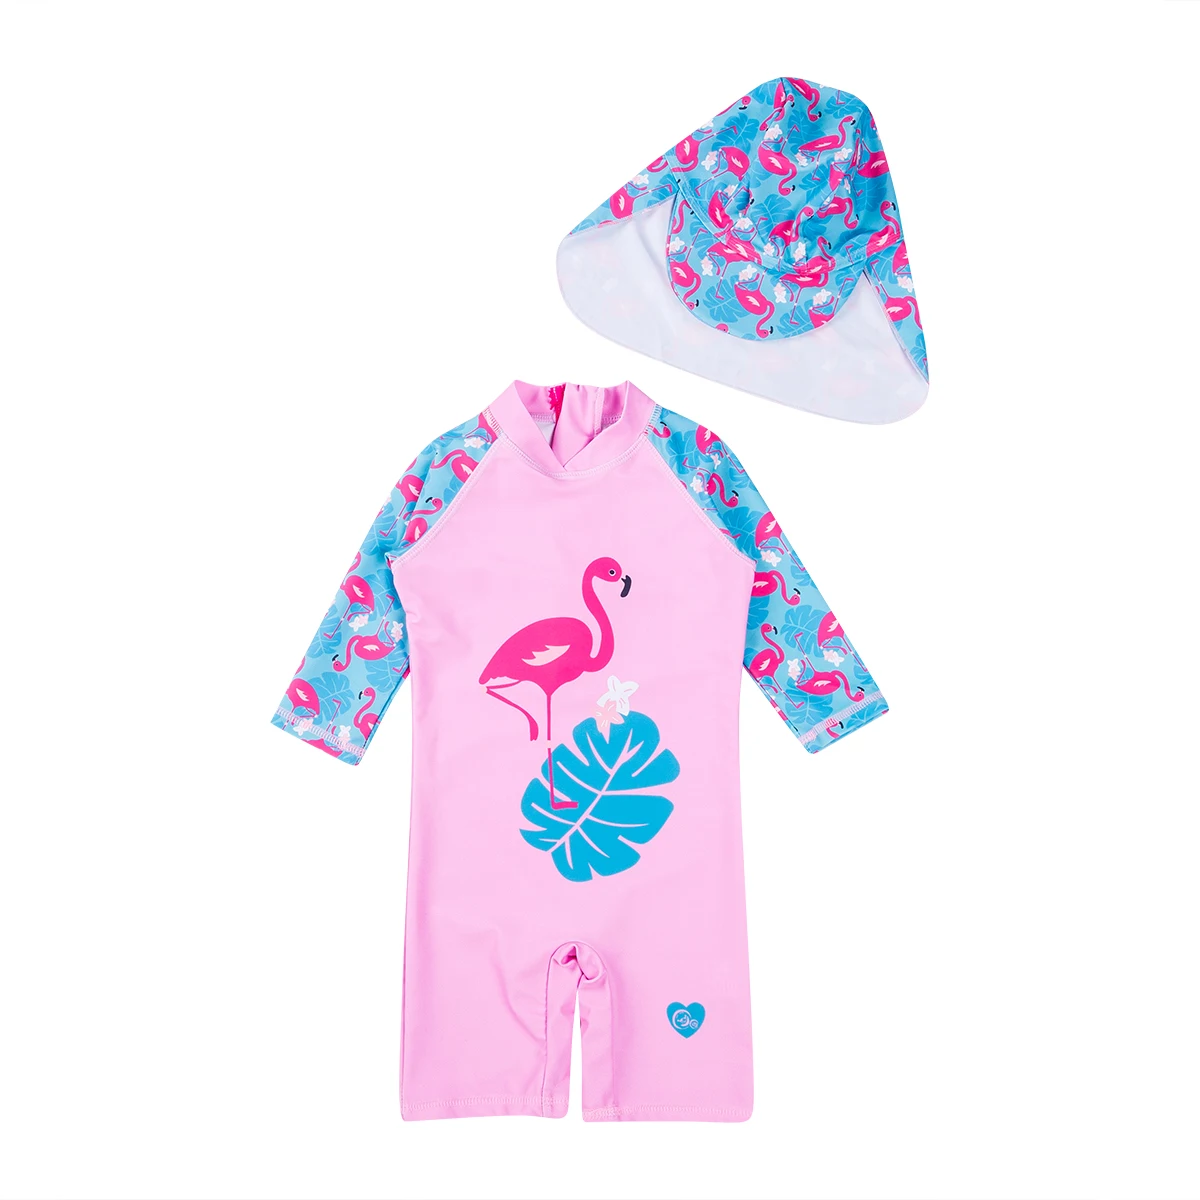 2 шт. модная одежда для маленьких девочек и мальчиков на молнии розовый Фламинго купальники кепки купальные костюмы купальники пляжная одежда